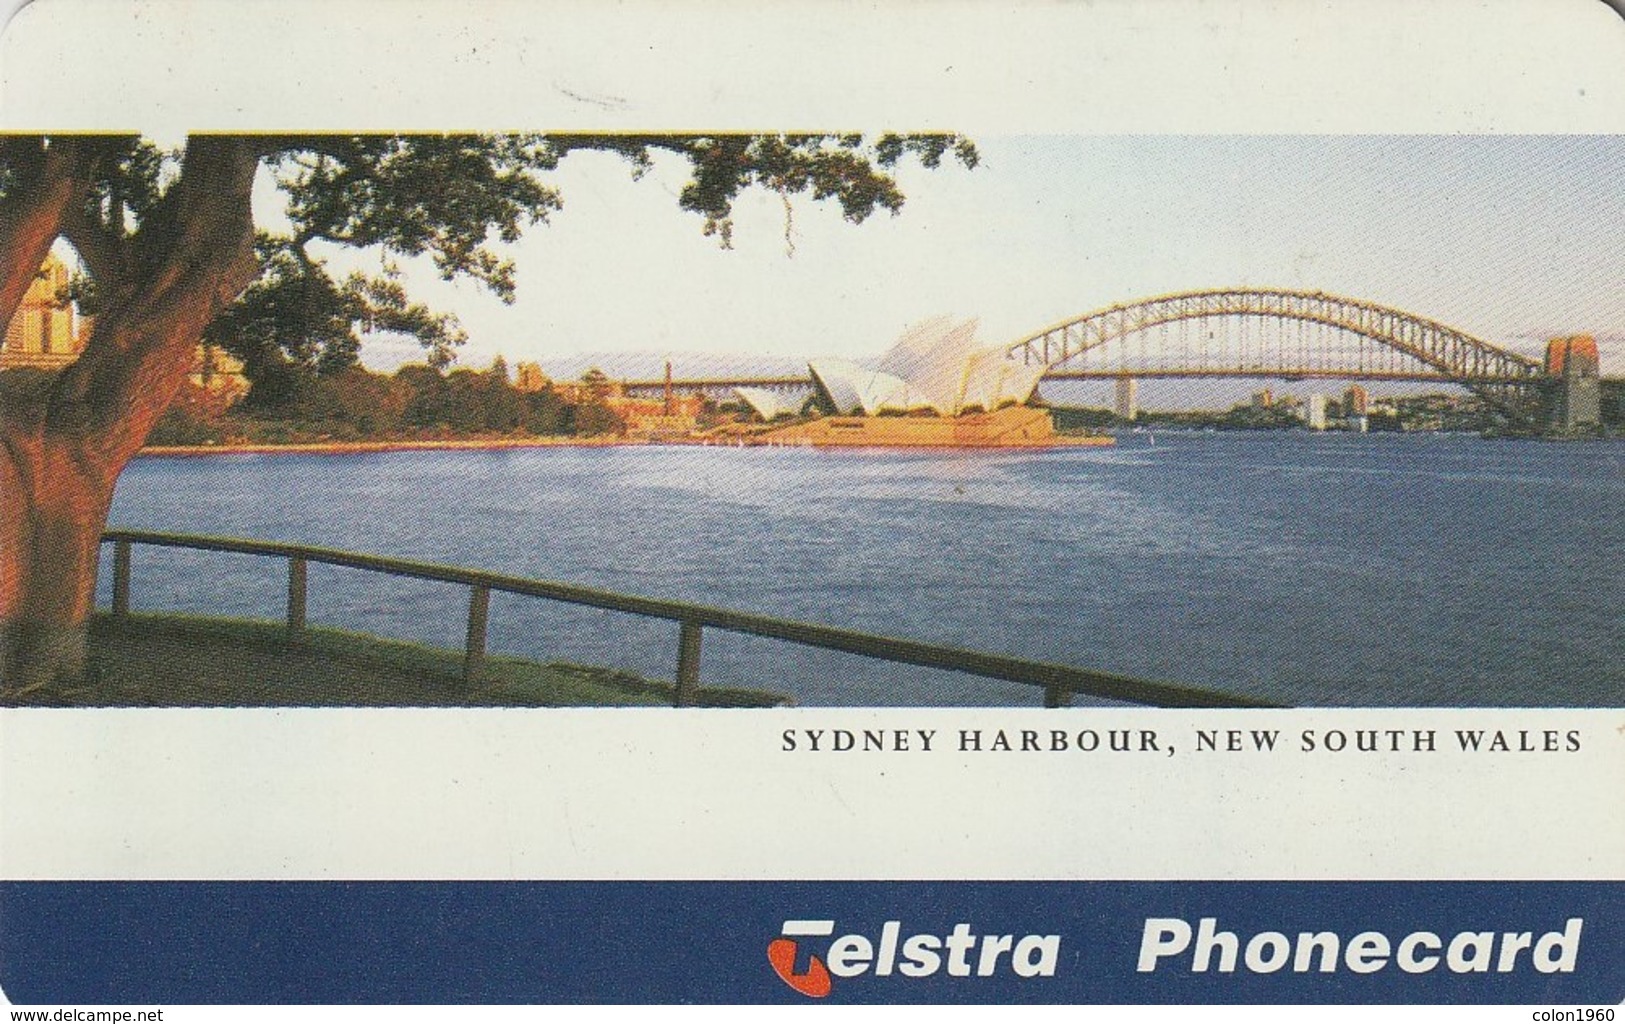 TARJETA TELEFONICA DE AUSTRALIA, Sydney Harbour, New South Wales. (exp.01/2000) AUS-CN-97009. (060) CHIP A. - Australia